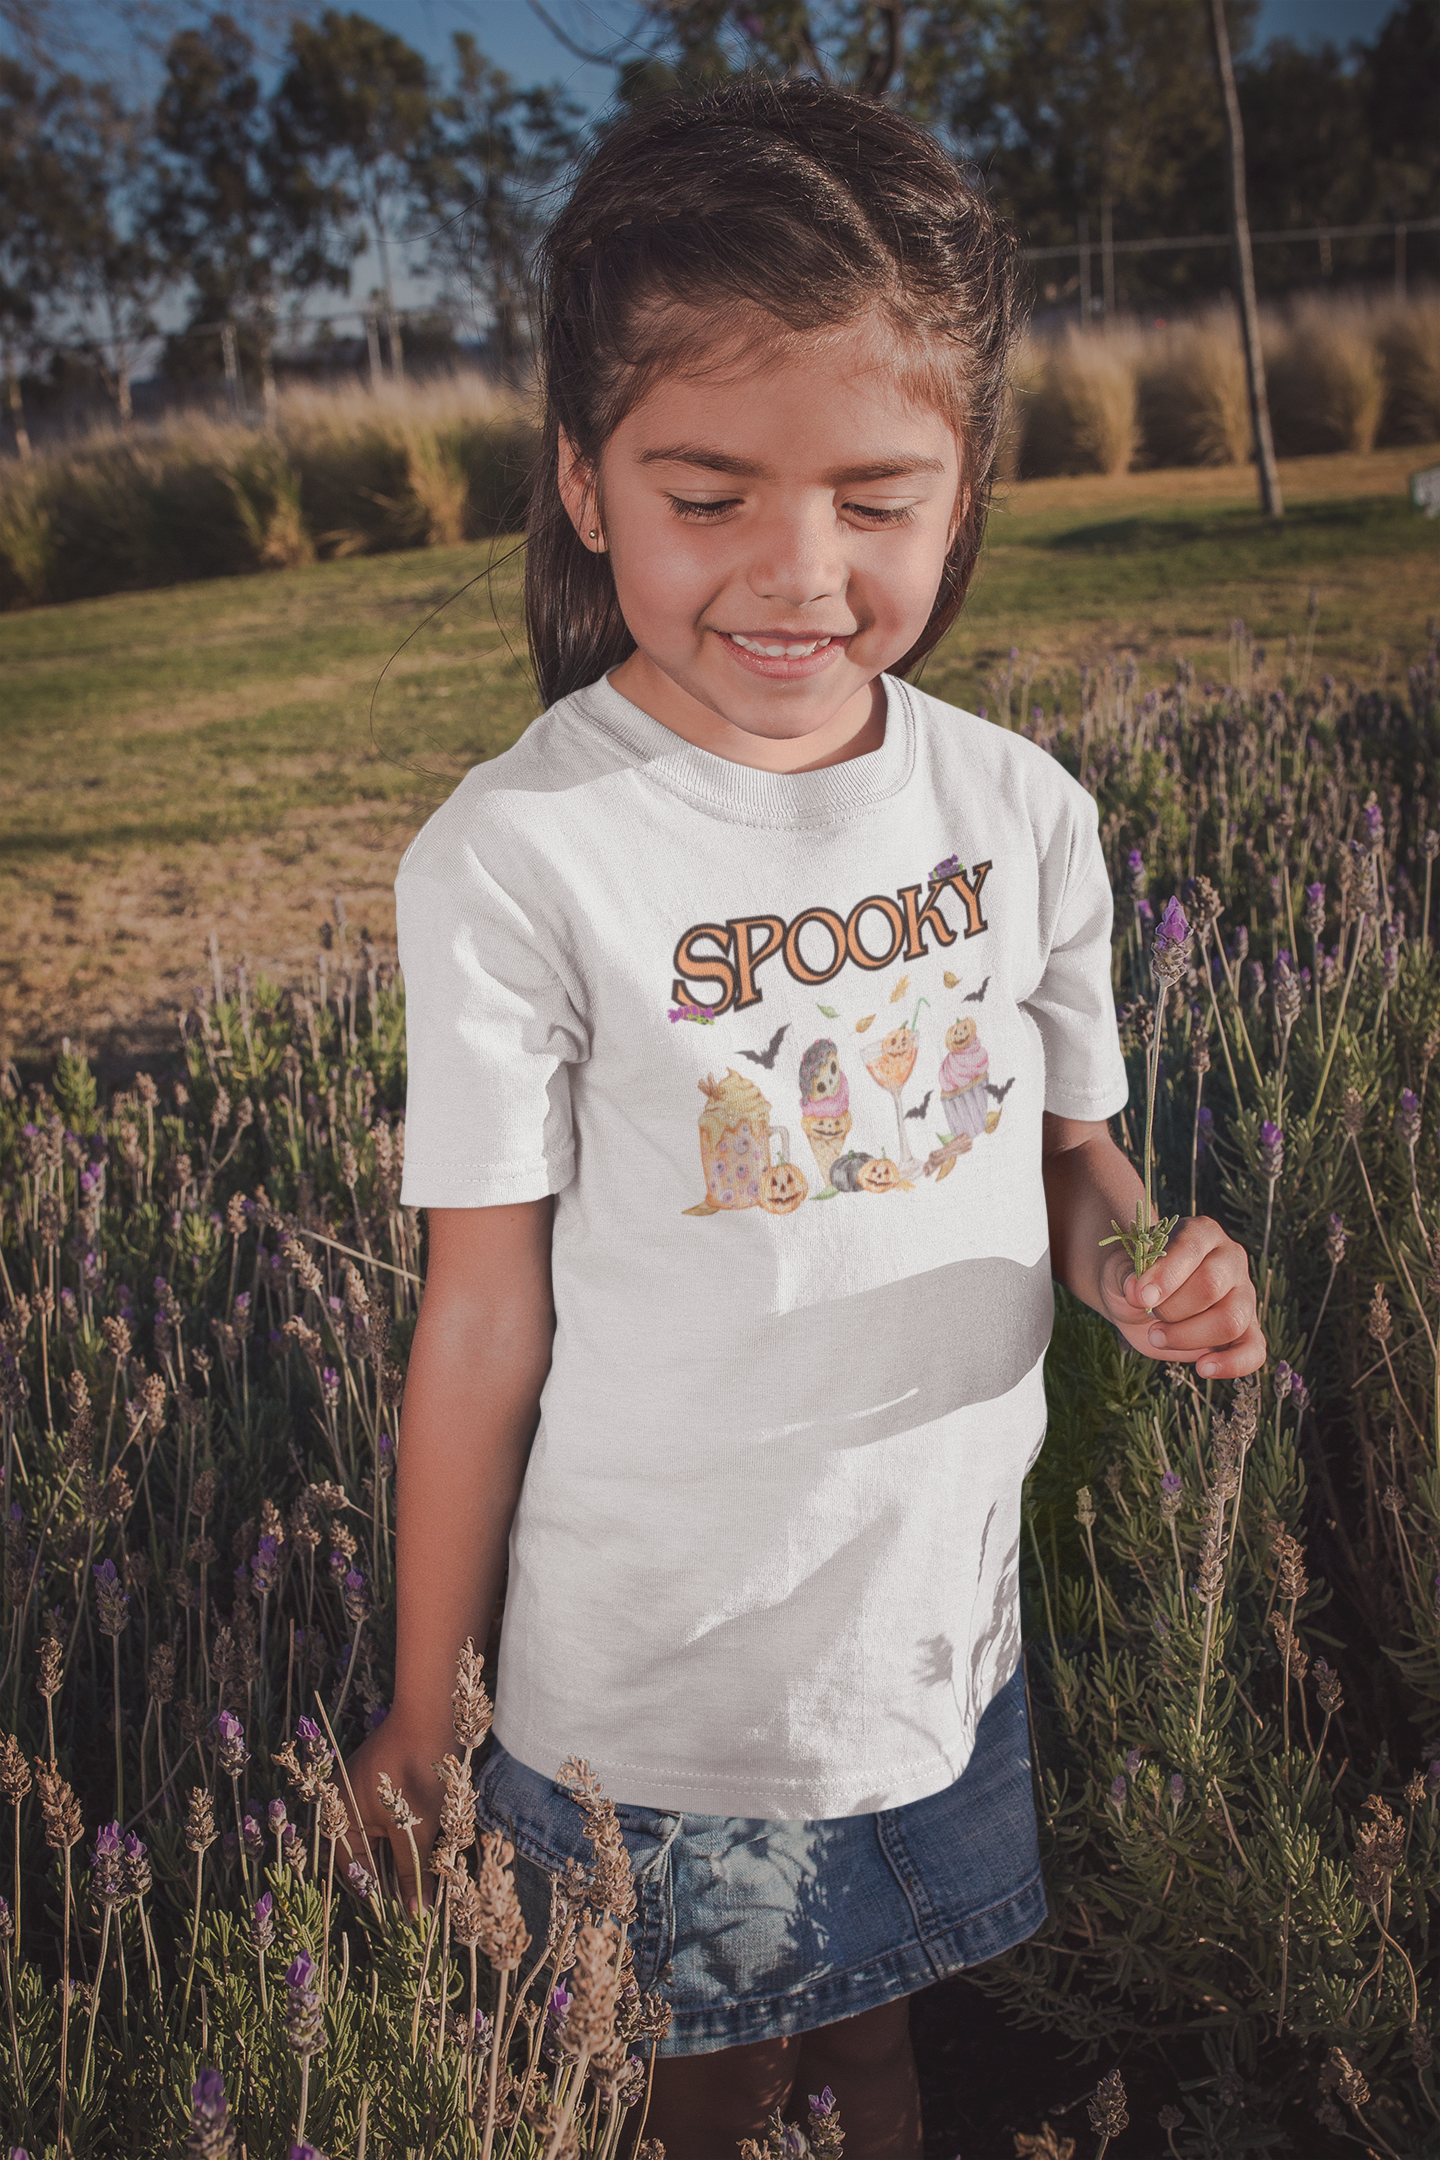 Spooky - Girls' Toddler Jersey T-Shirt